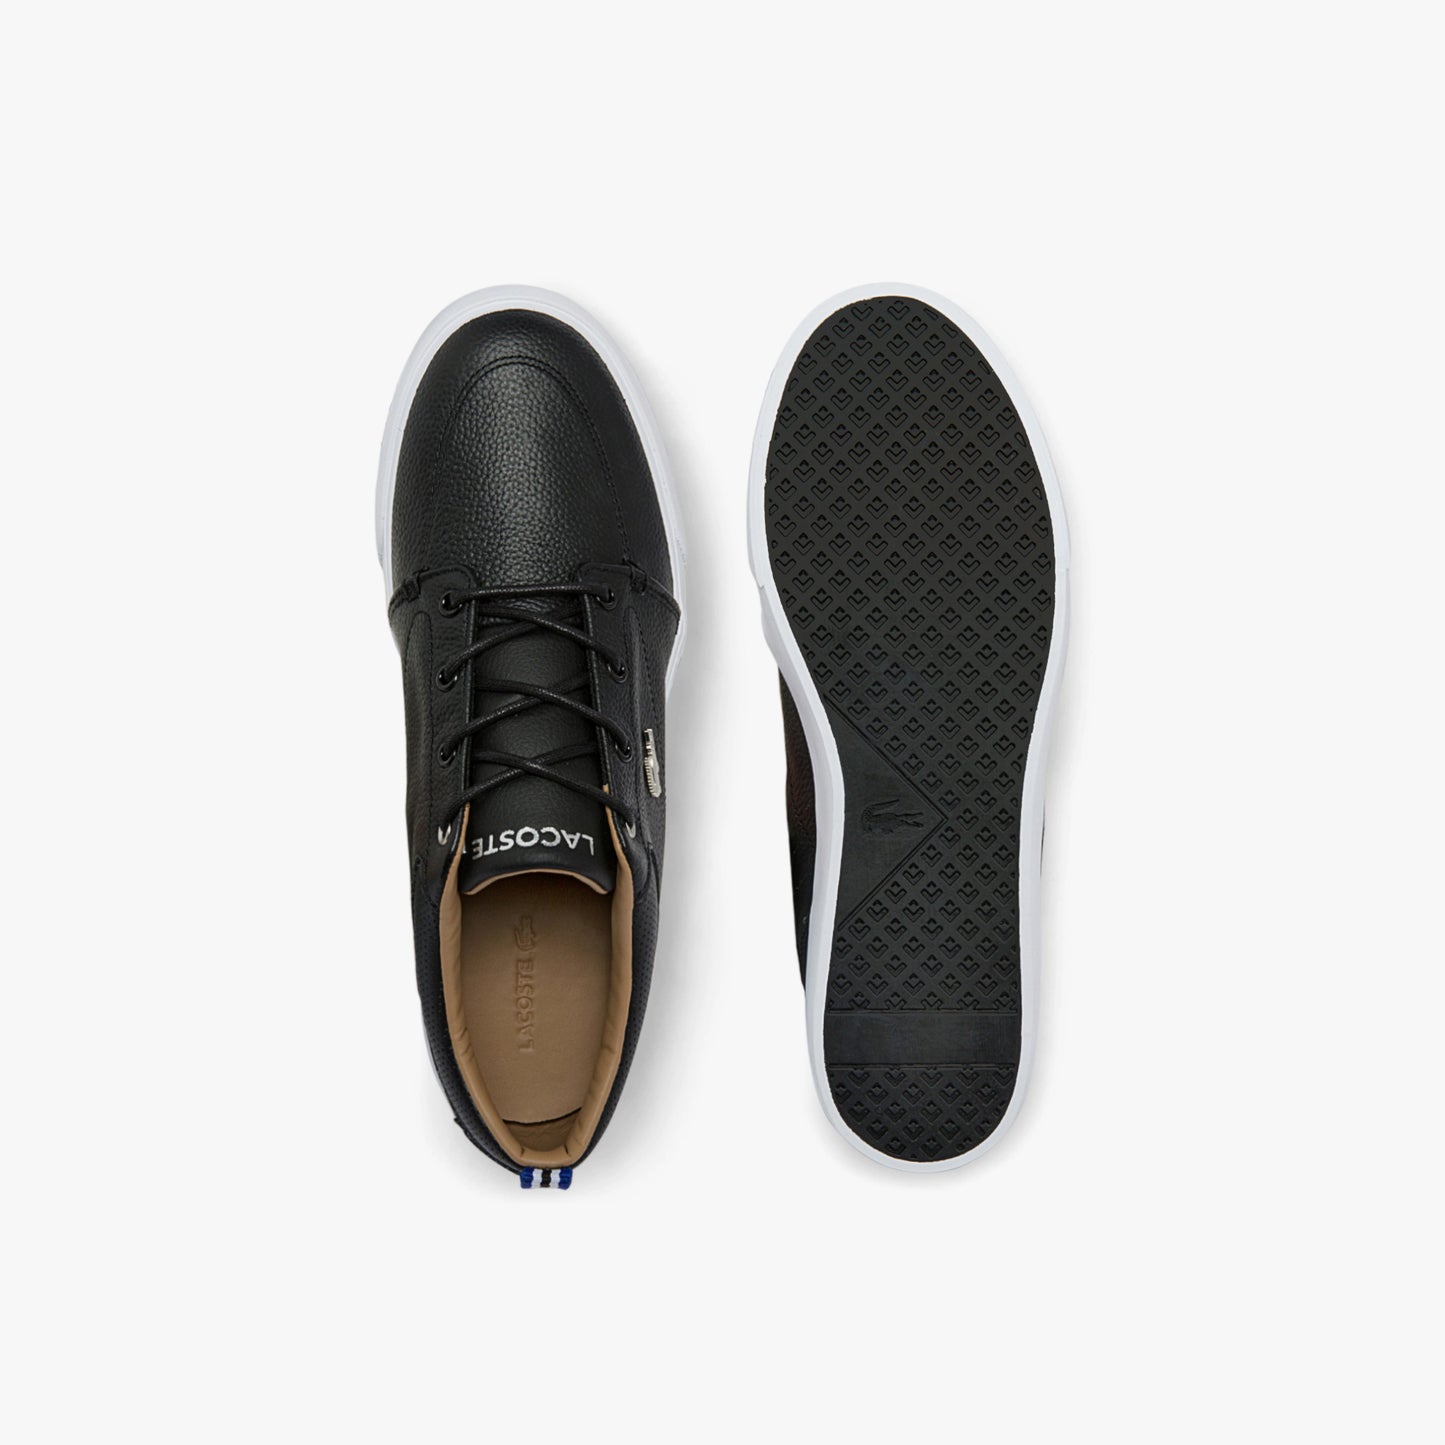 Black Lacoste shoes